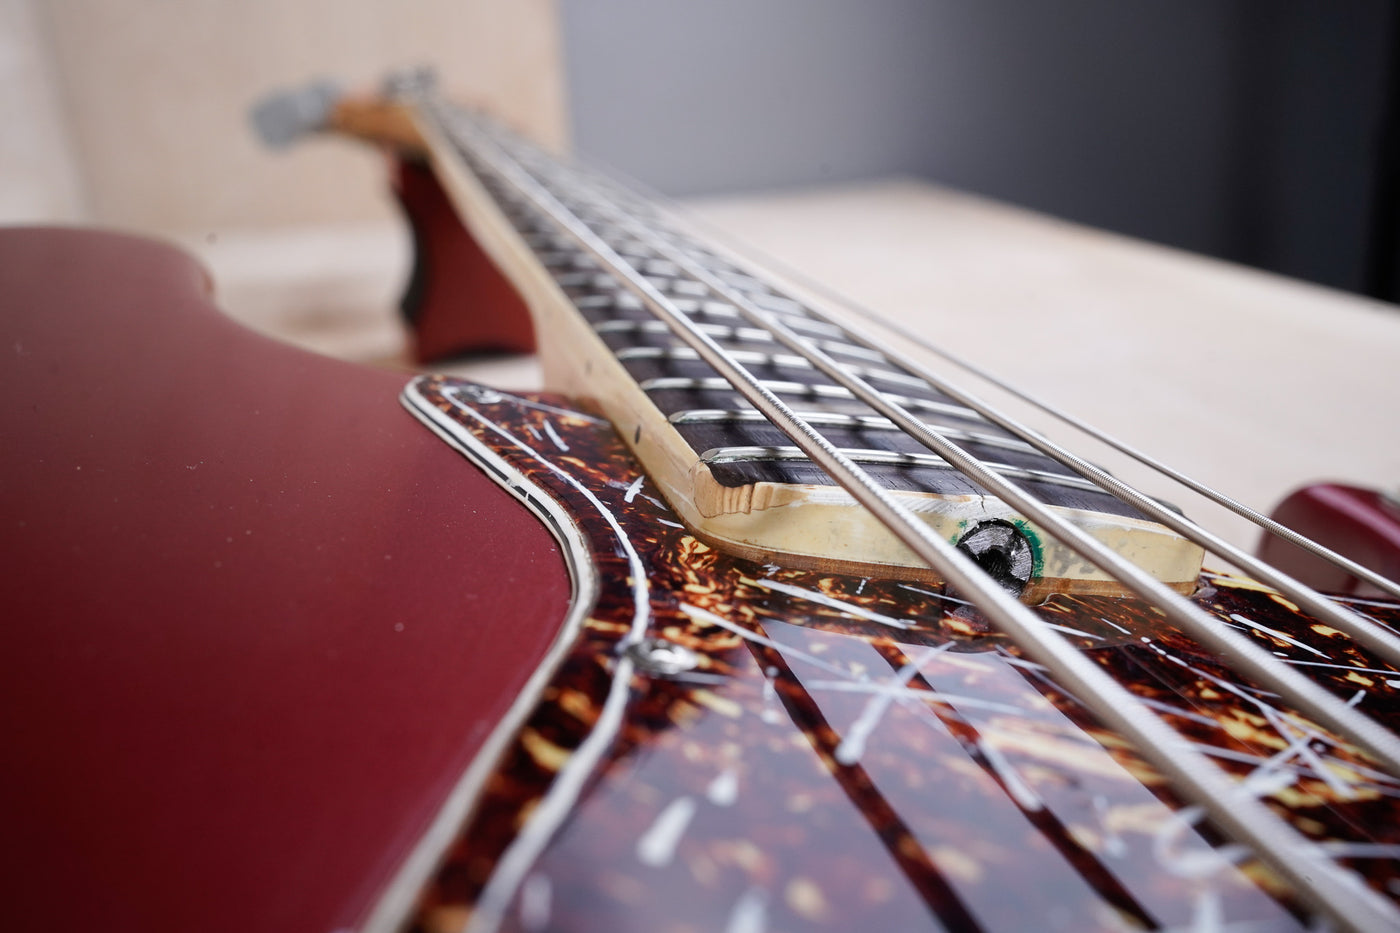 Fender Jazz Bass 1970 Cherry Red Refinish Vintage USA w/ Hard Case